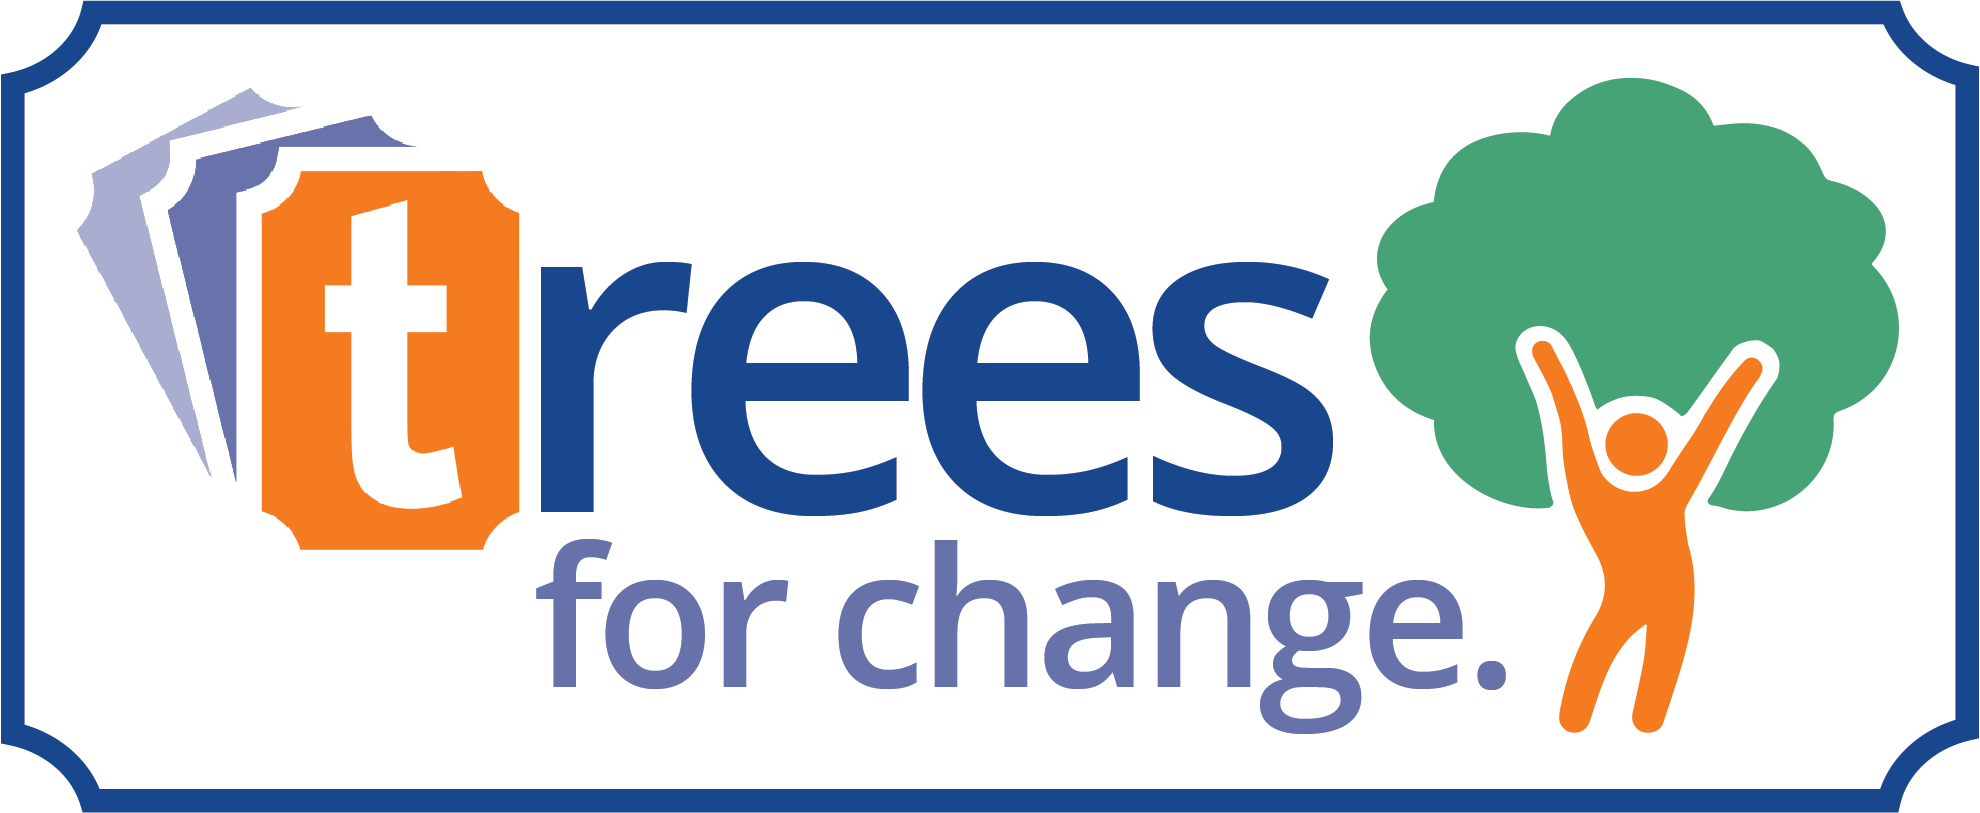 Ticketebo's Trees for Change Environmental Program